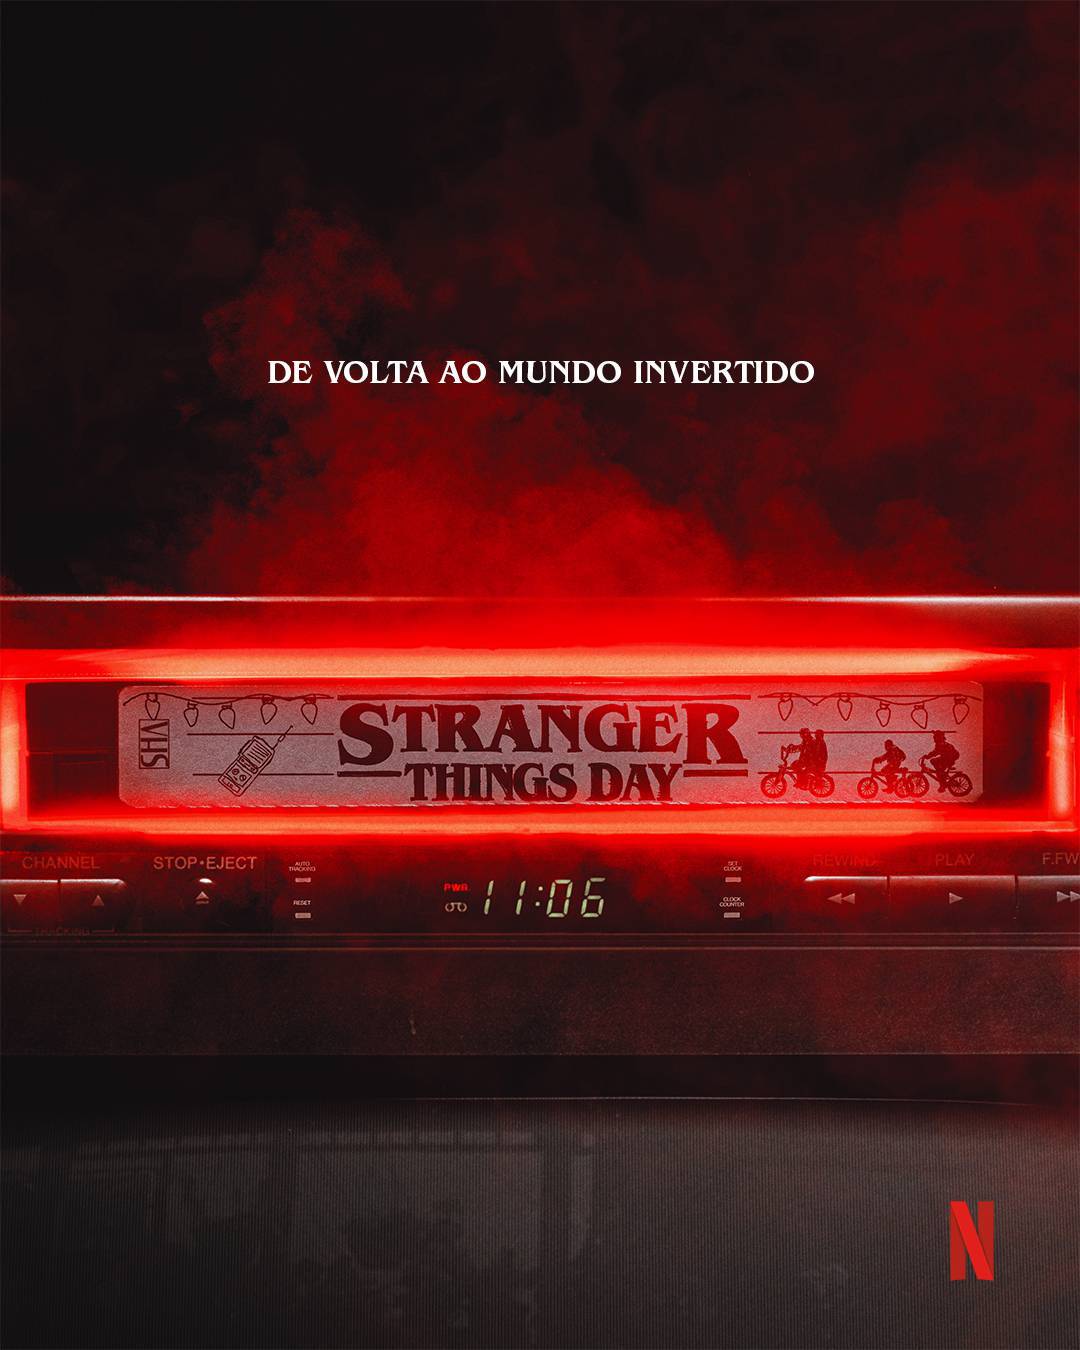 Stranger Things Day: cartaz da data e do teaser em 2023 divulgado pela Netflix.